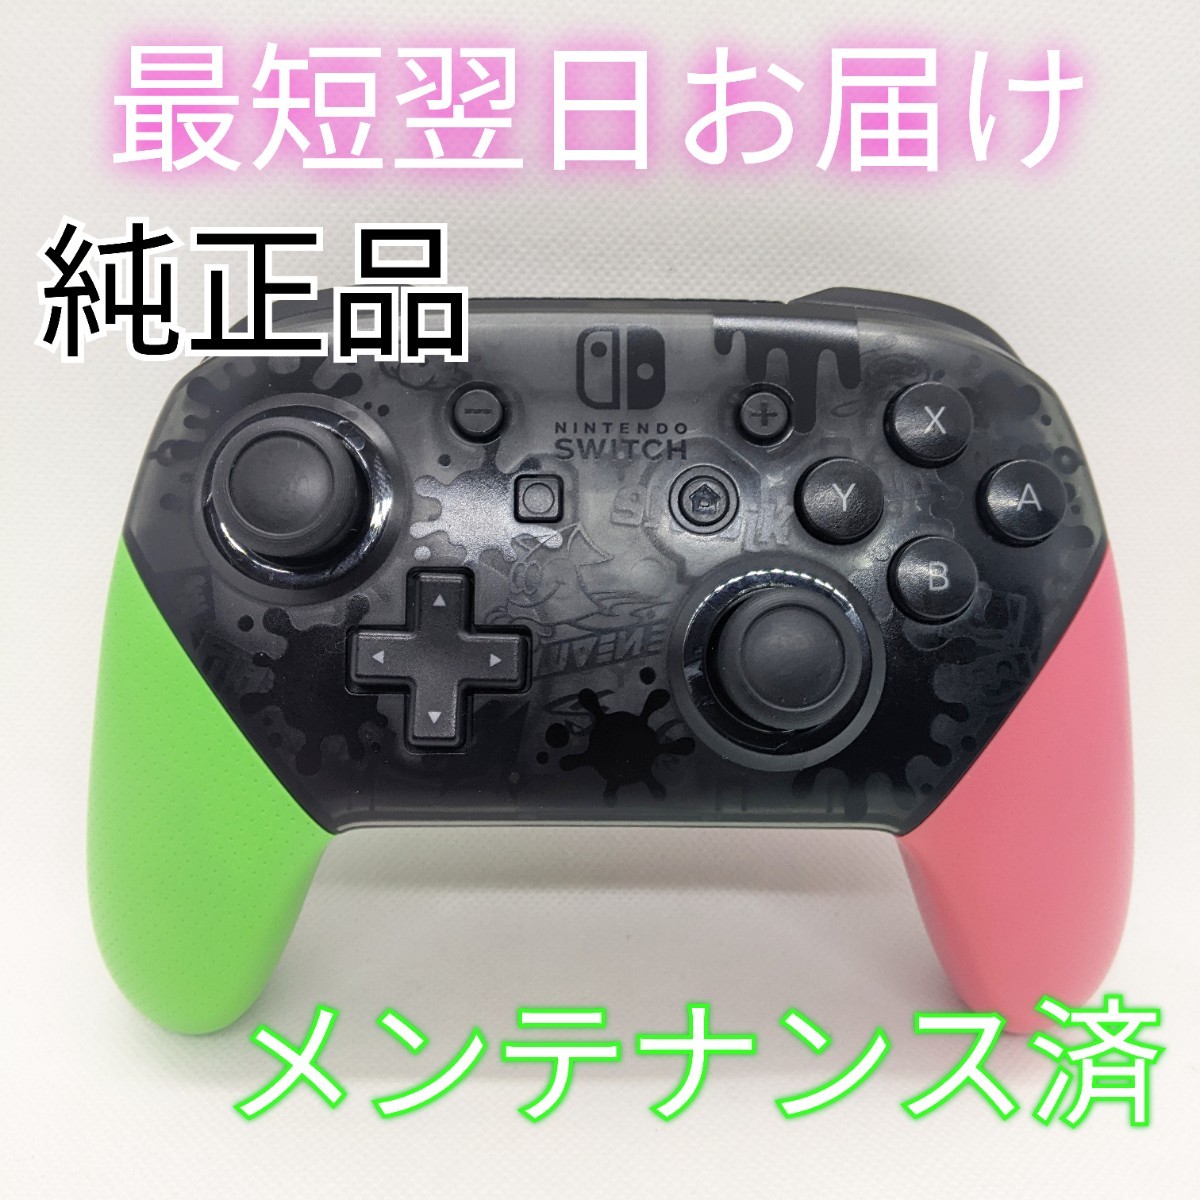 【中古】純正品 Nintendo Switch プロコン スプラトゥーン2 エディション スイッチ 正規品 最短翌日お届け